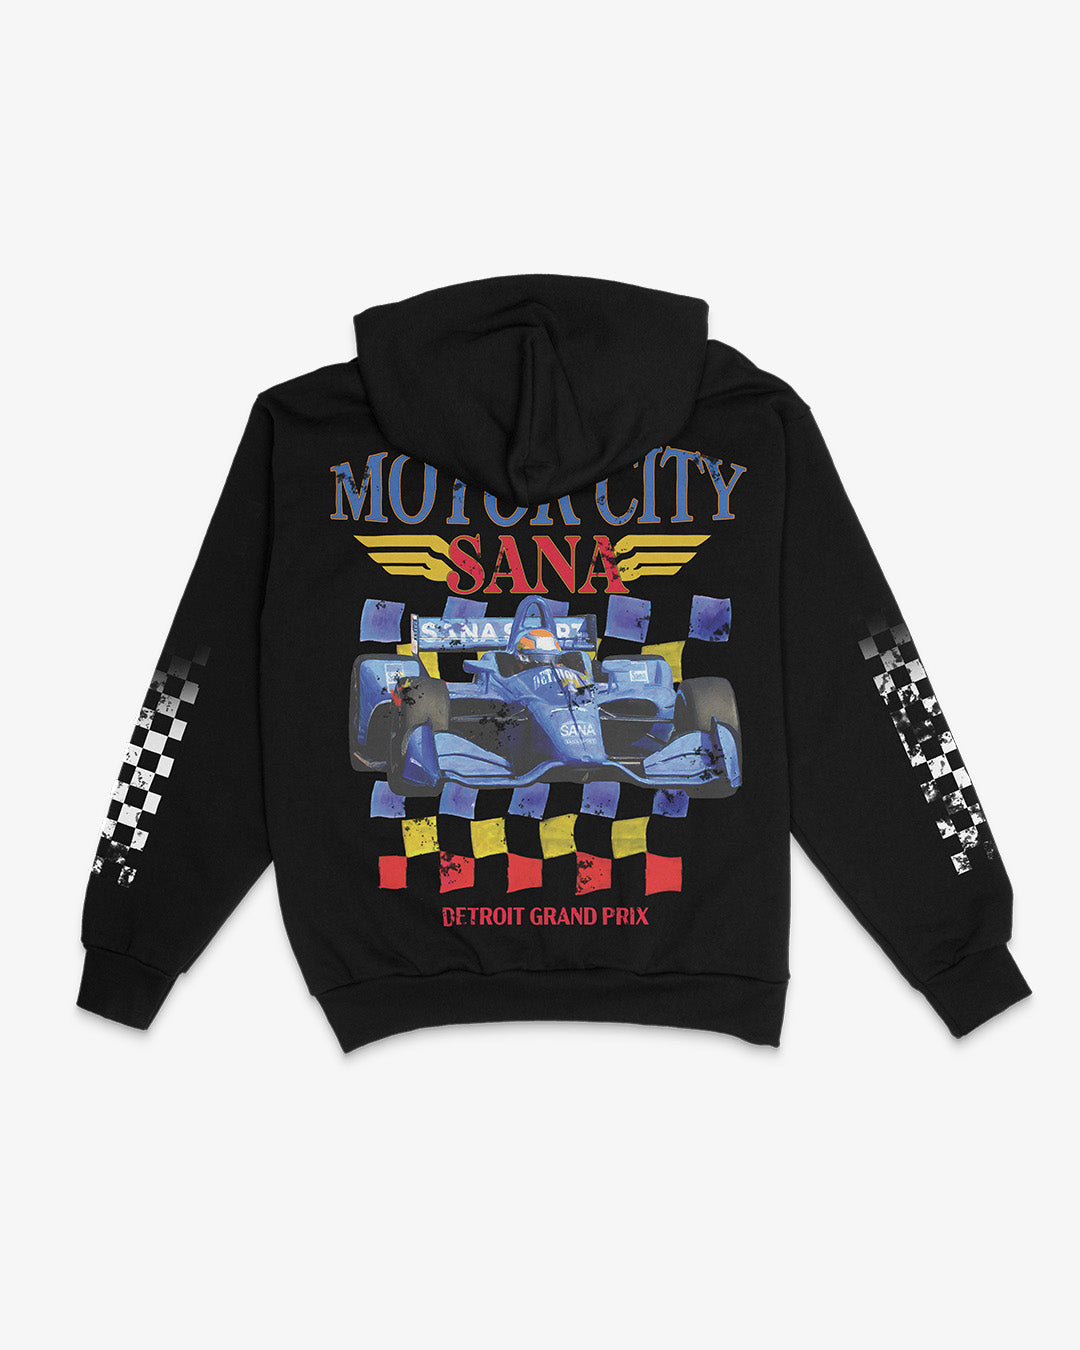 MOTOR CITY RACING HOODIE - BLACK – Sana Detroit